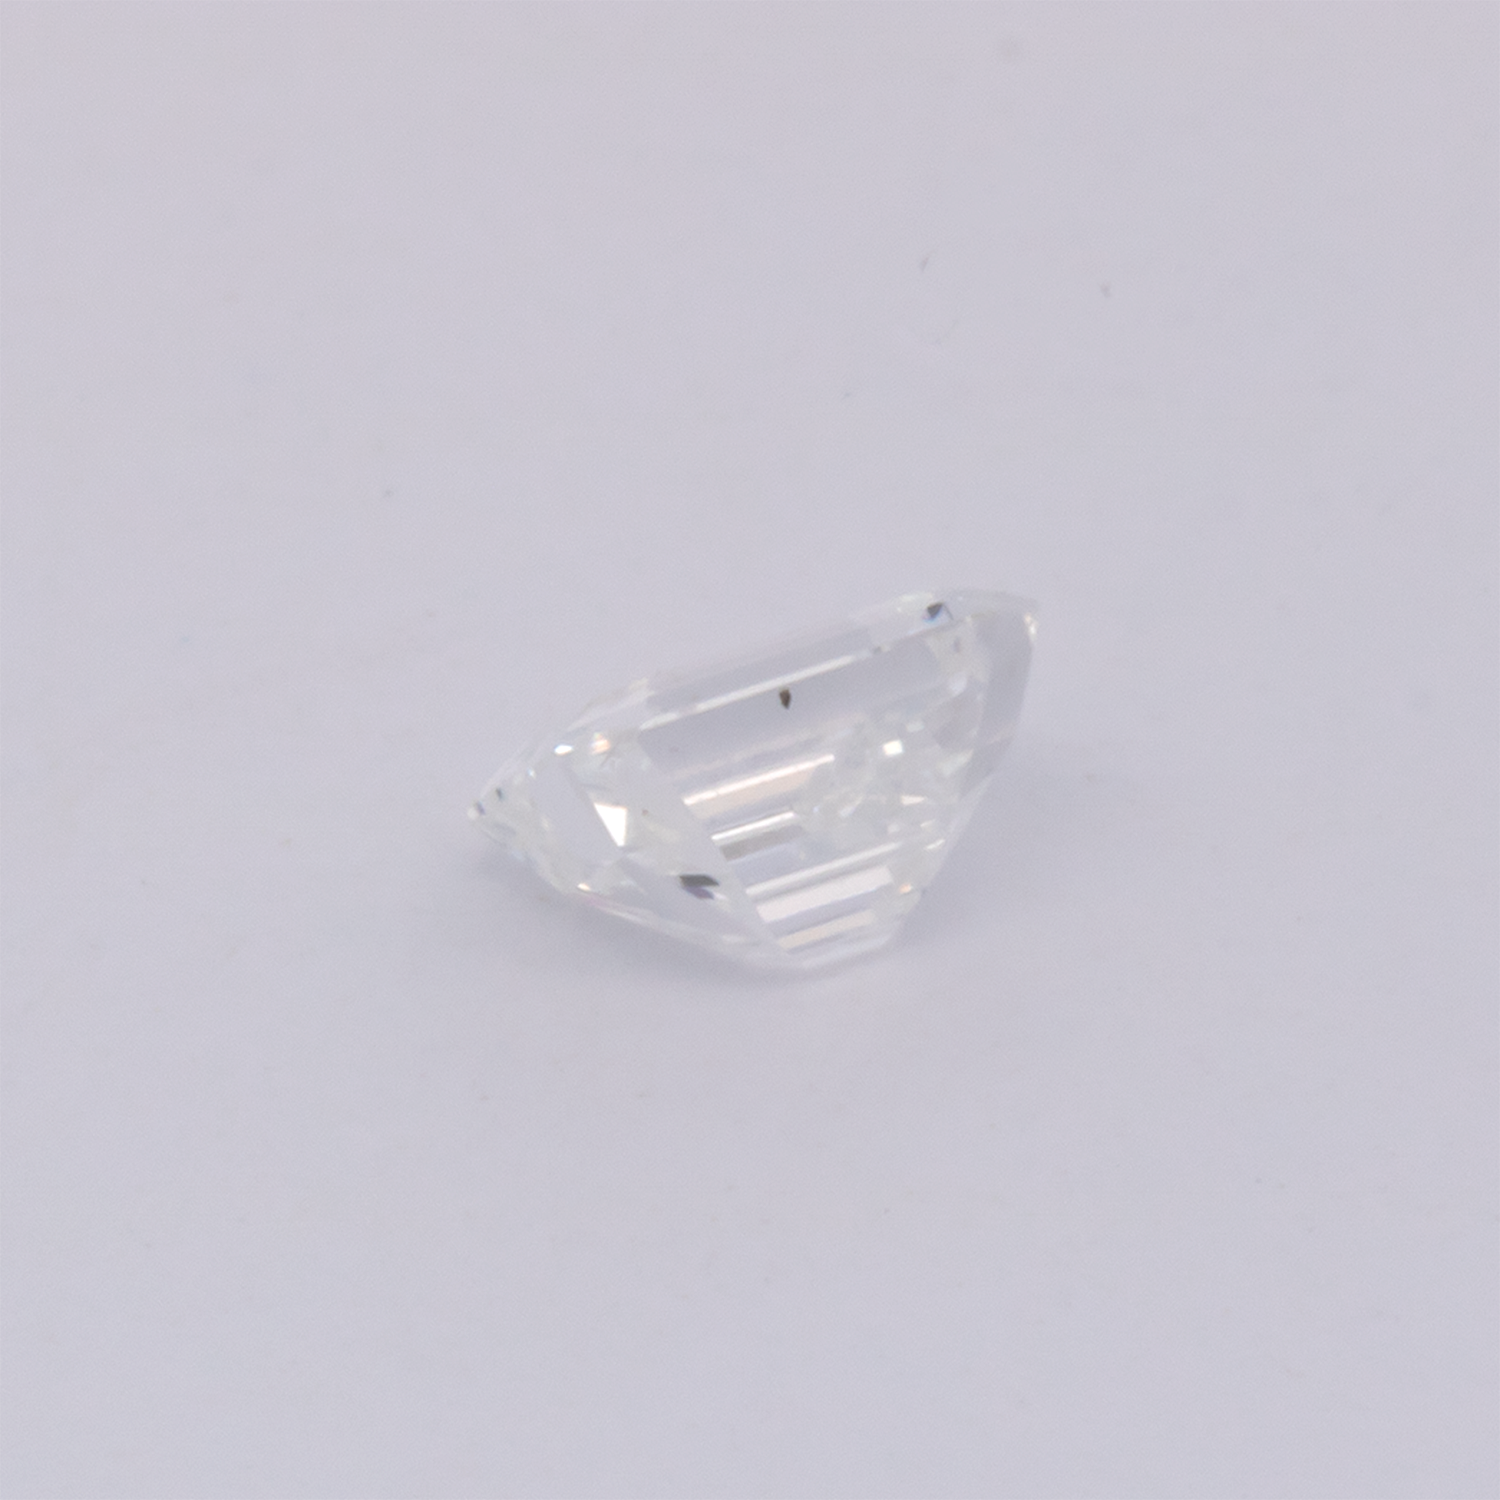 Diamant - fein weiß, achteck, 4.1x4.3 mm, 0.30 cts, Nr. DT1012